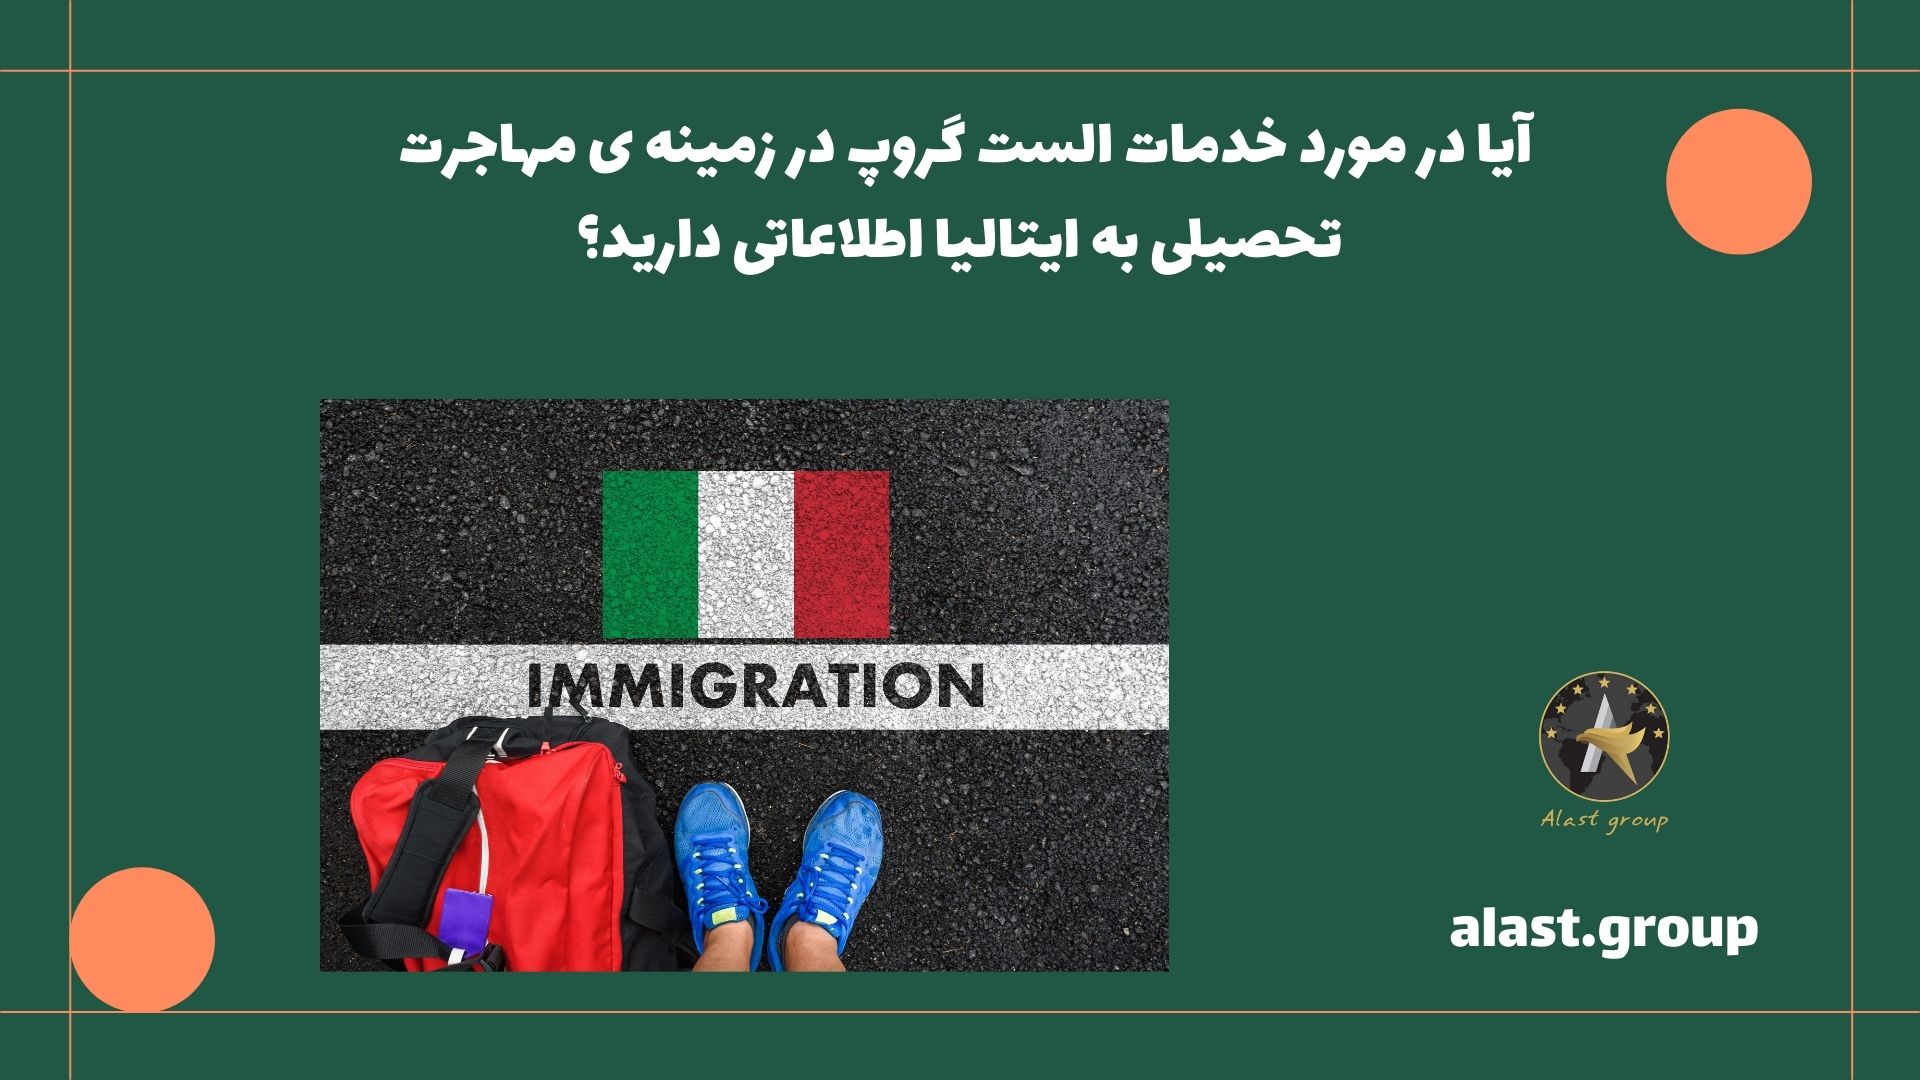 آیا در مورد خدمات الست گروپ در زمینه ی مهاجرت تحصیلی به ایتالیا اطلاعاتی دارید؟